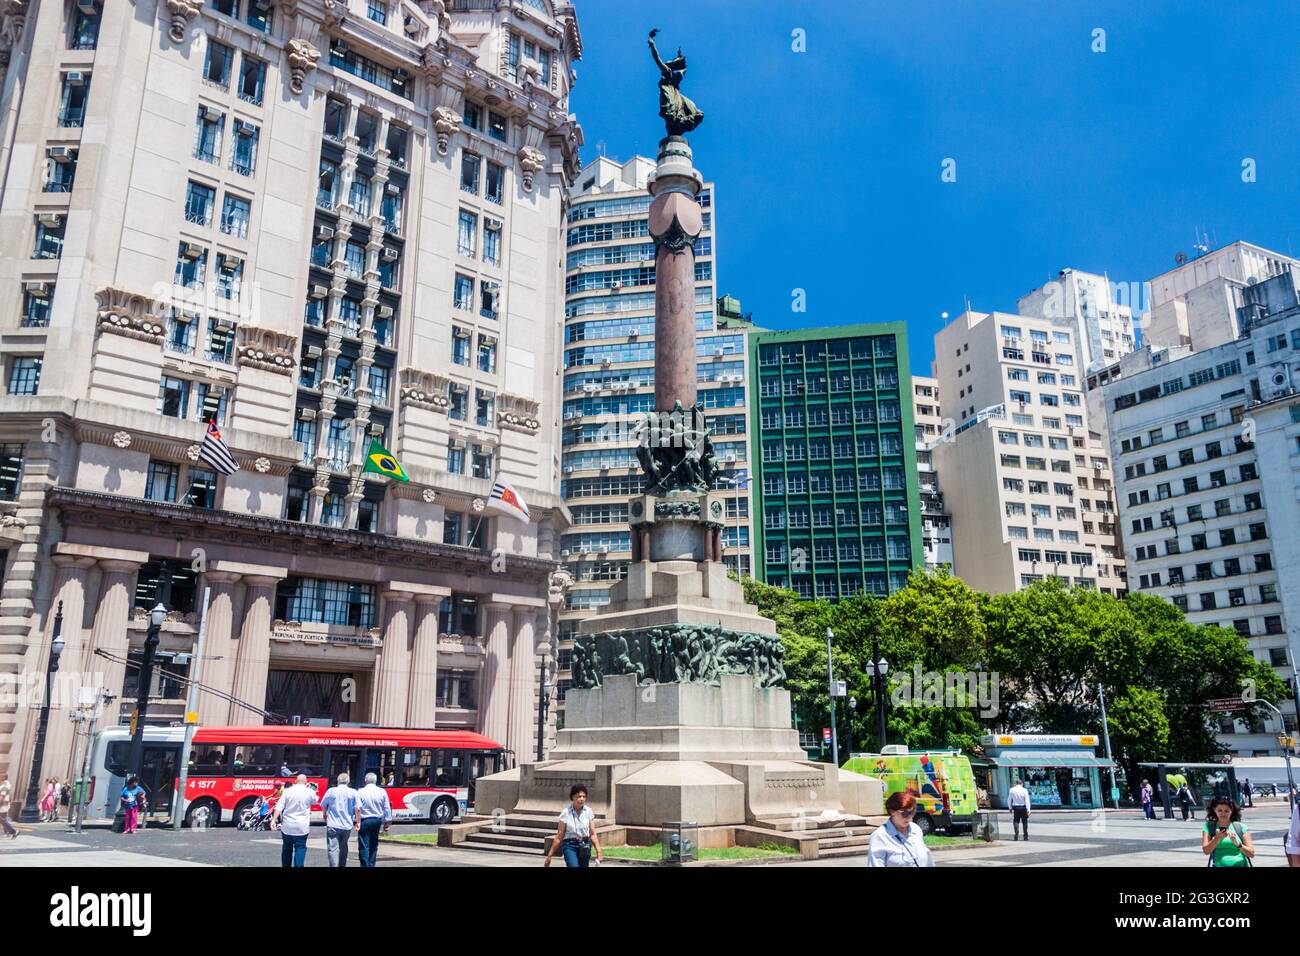 SAN PAOLO, BRASILE - 3 FEBBRAIO 2015: Monumento per la fondazione di San Paolo. Foto Stock